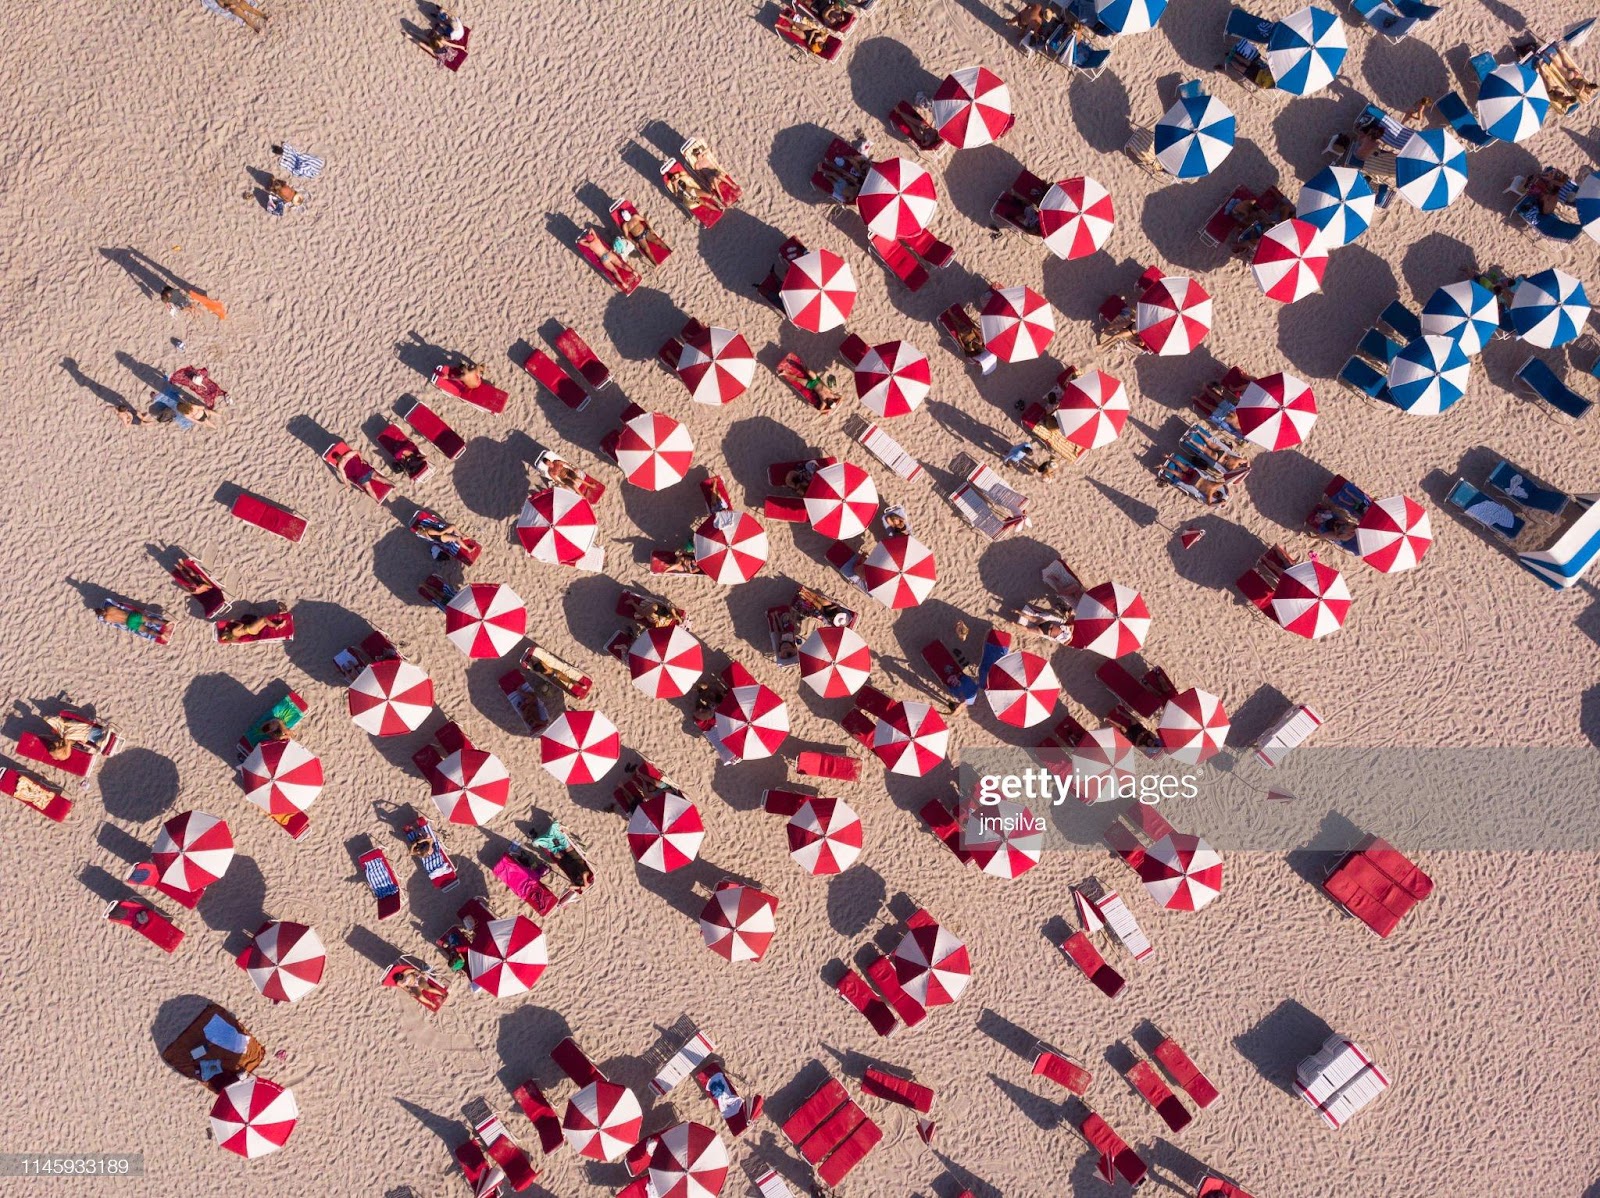 C:\Users\Valerio\Desktop\aerial-view-of-crowd-sunbathing-on-the-beach-picture-id1145933189.jpg